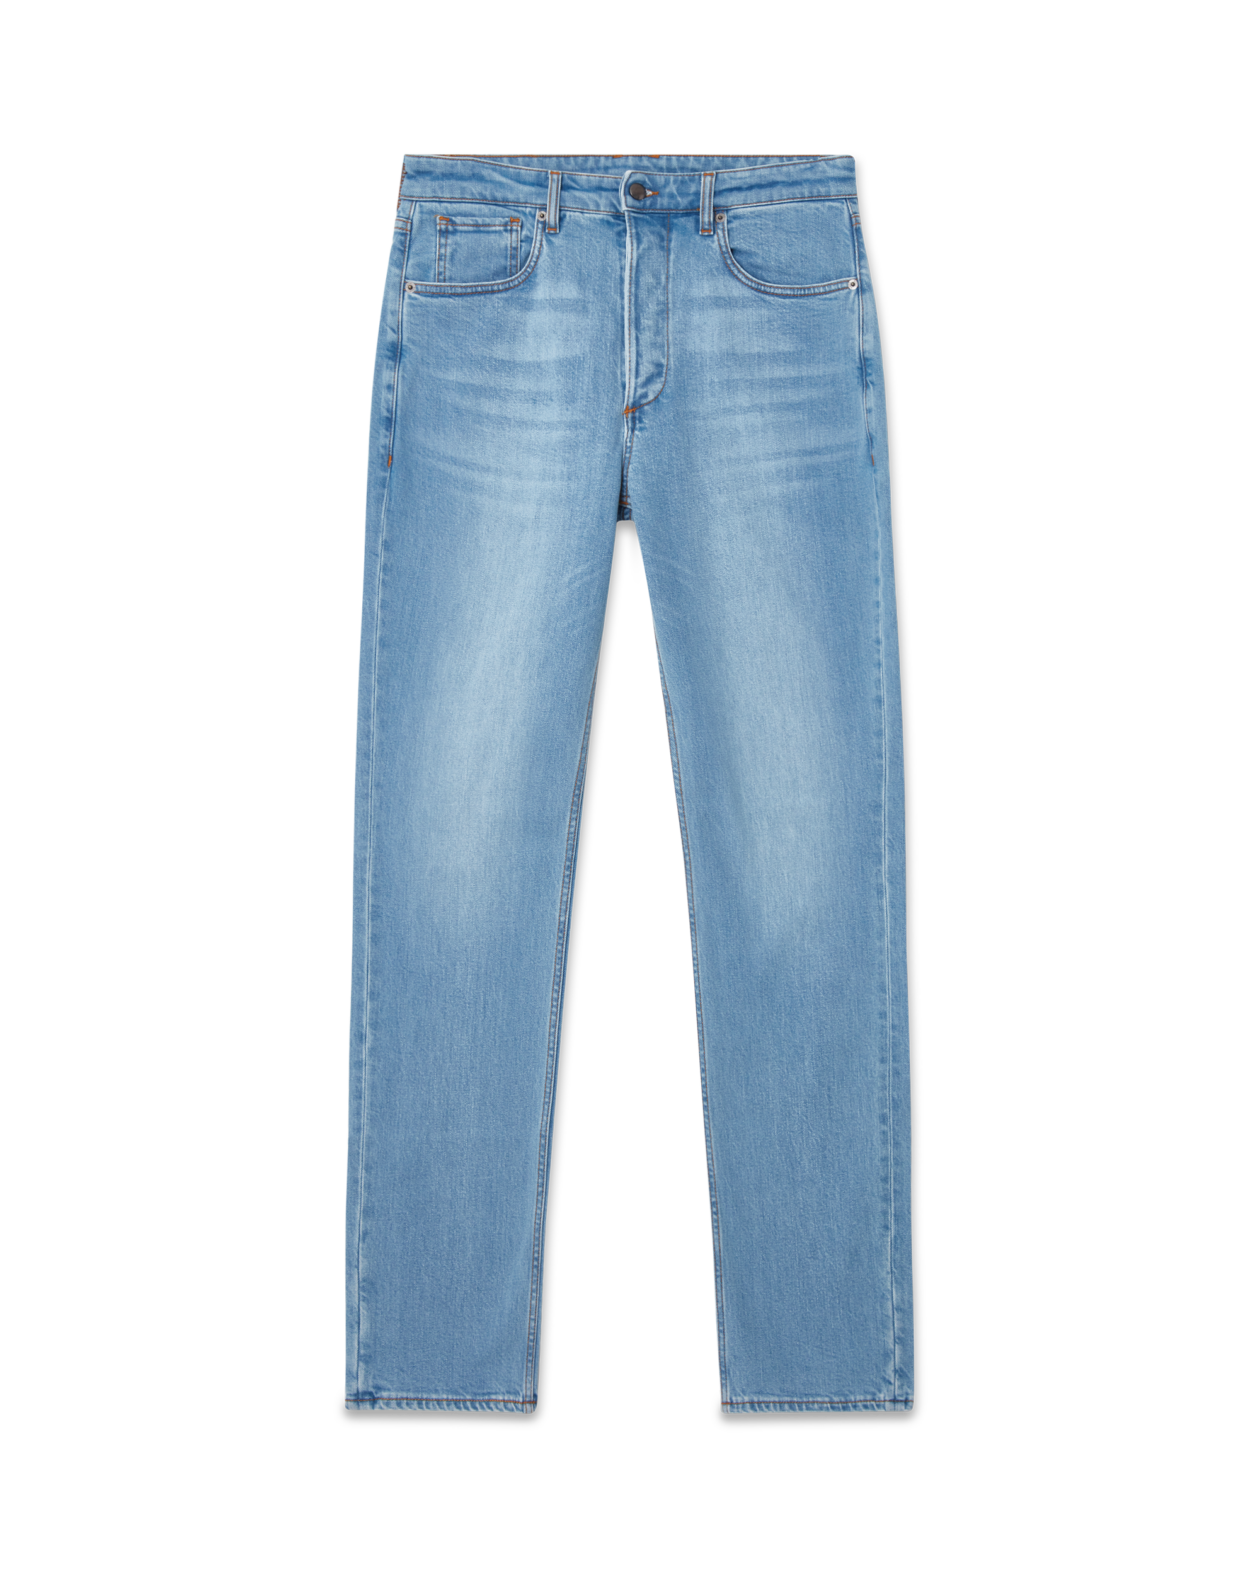 Regular Fit Jeans Light Wash Light Blue